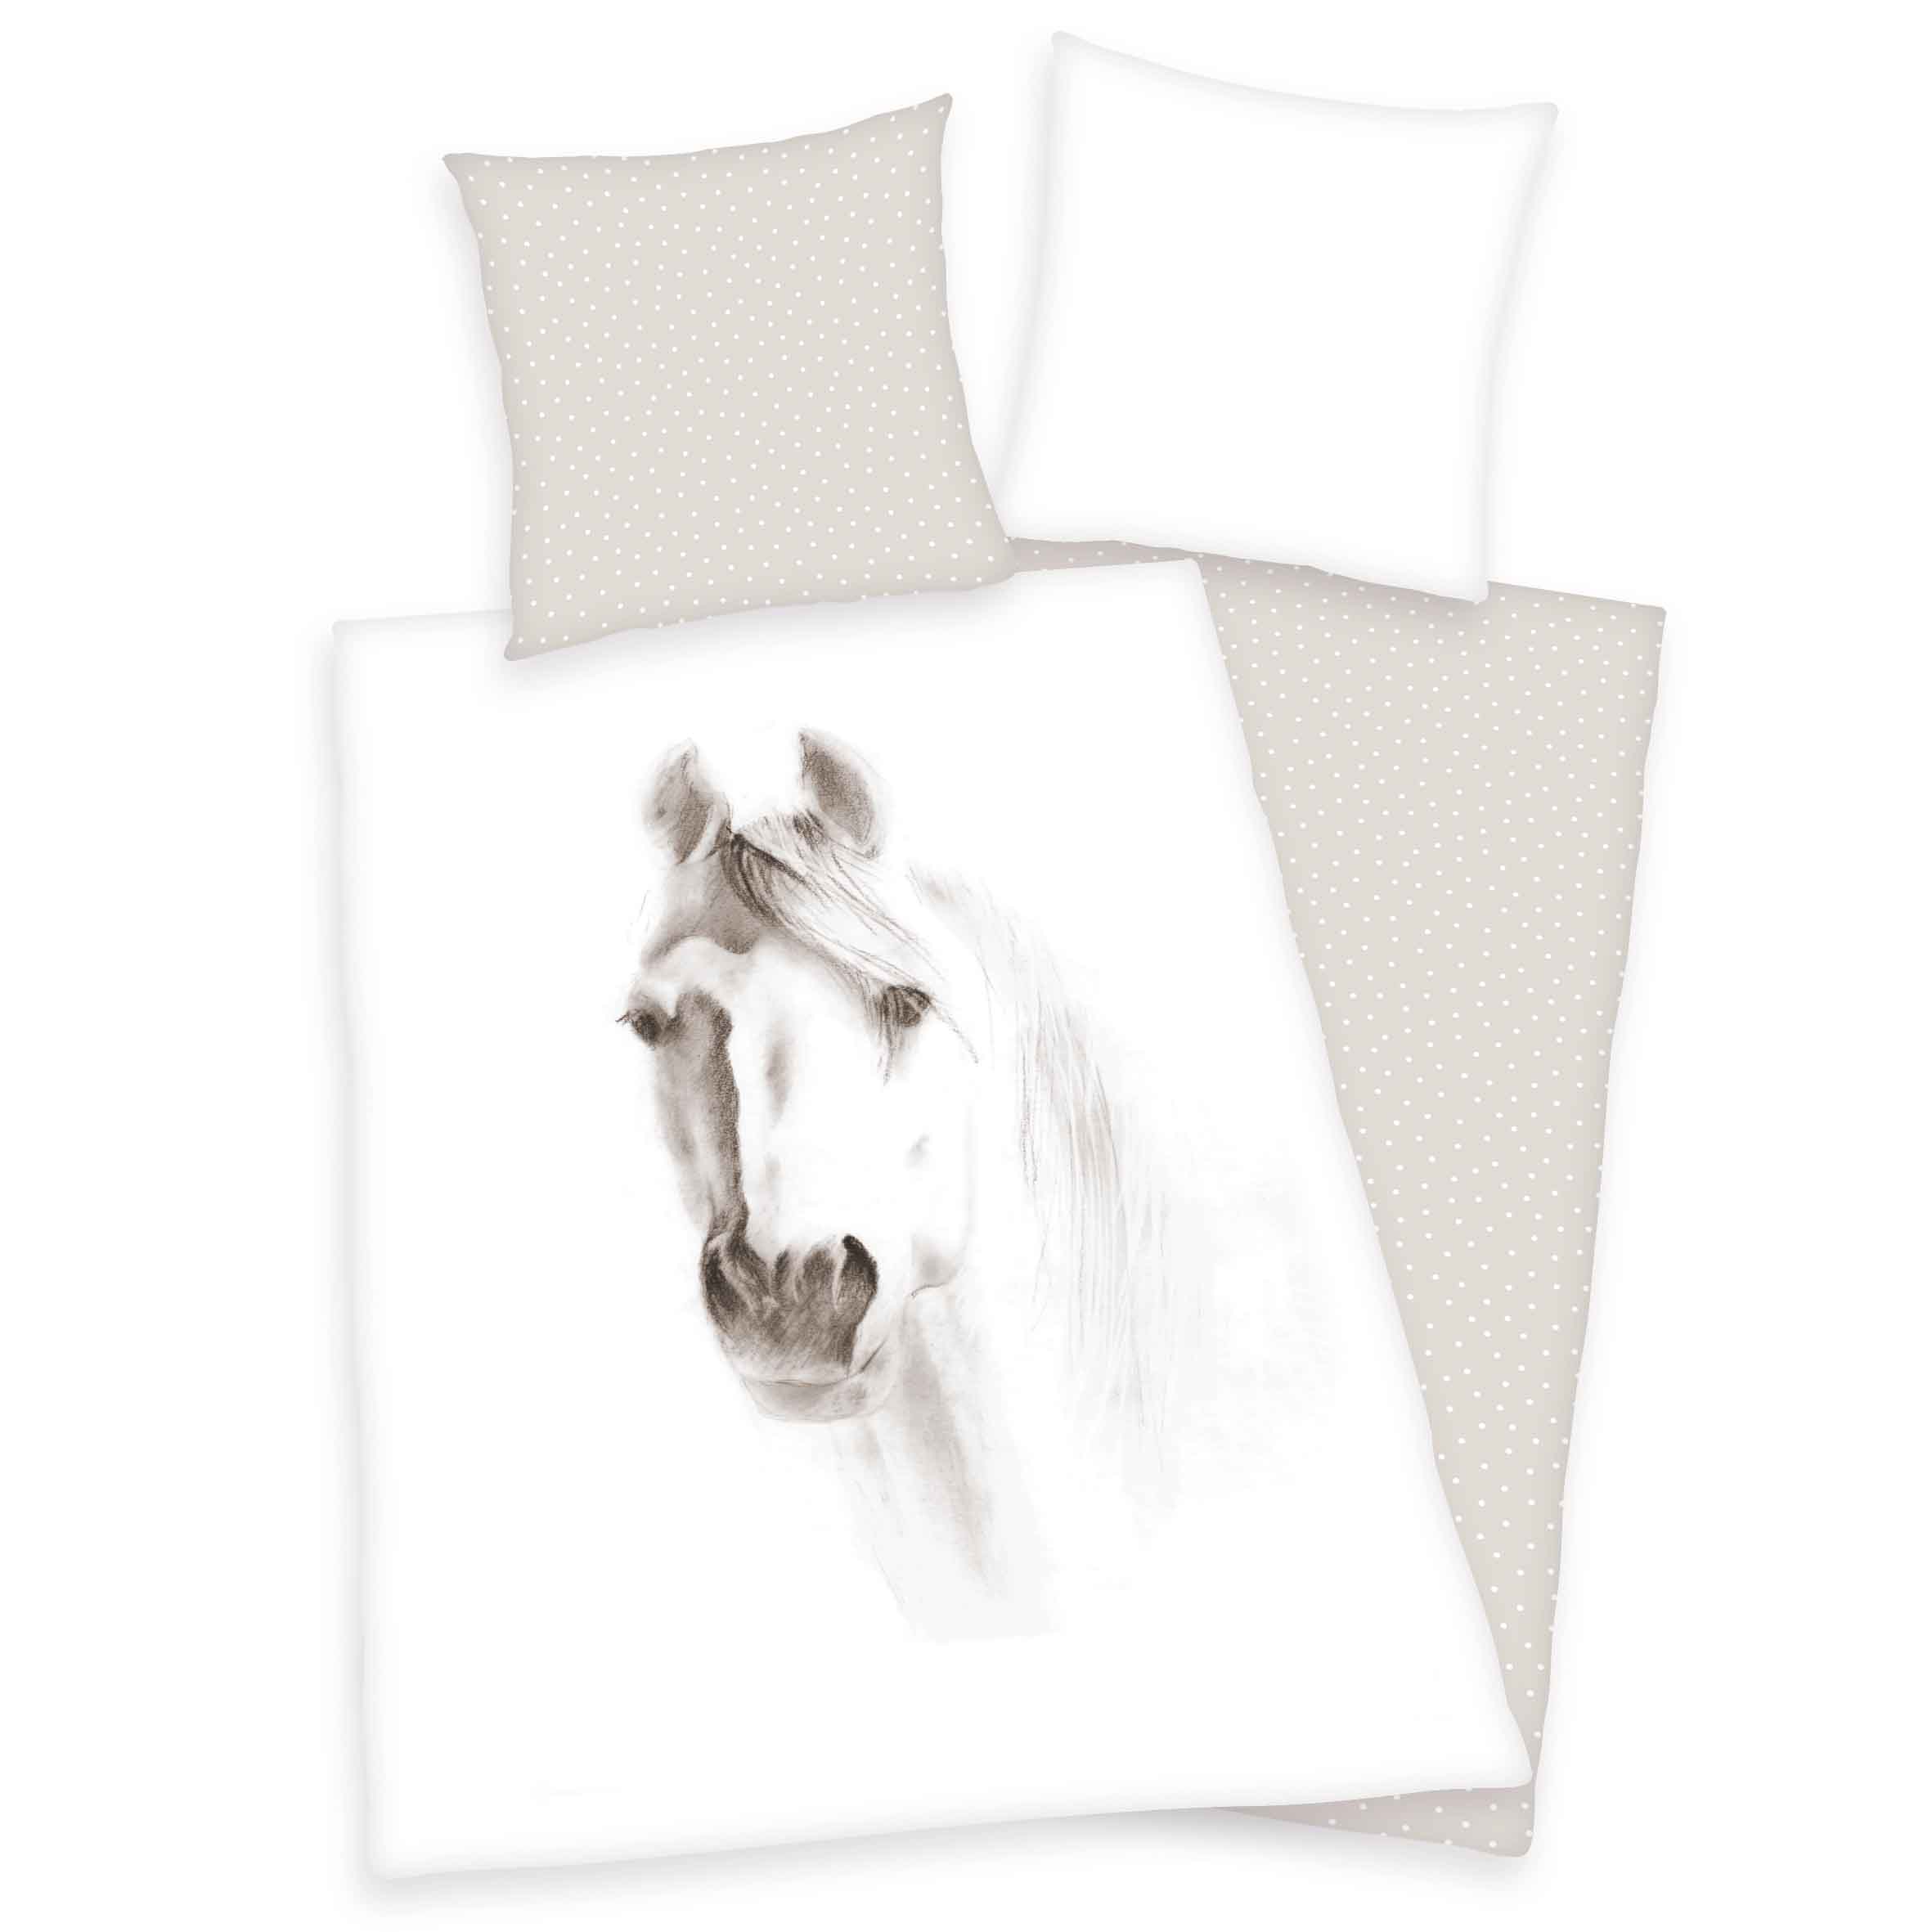 Produktbild Bettwäsche Pferd weiß beige Bettwäsche Vorderseite Rückseite